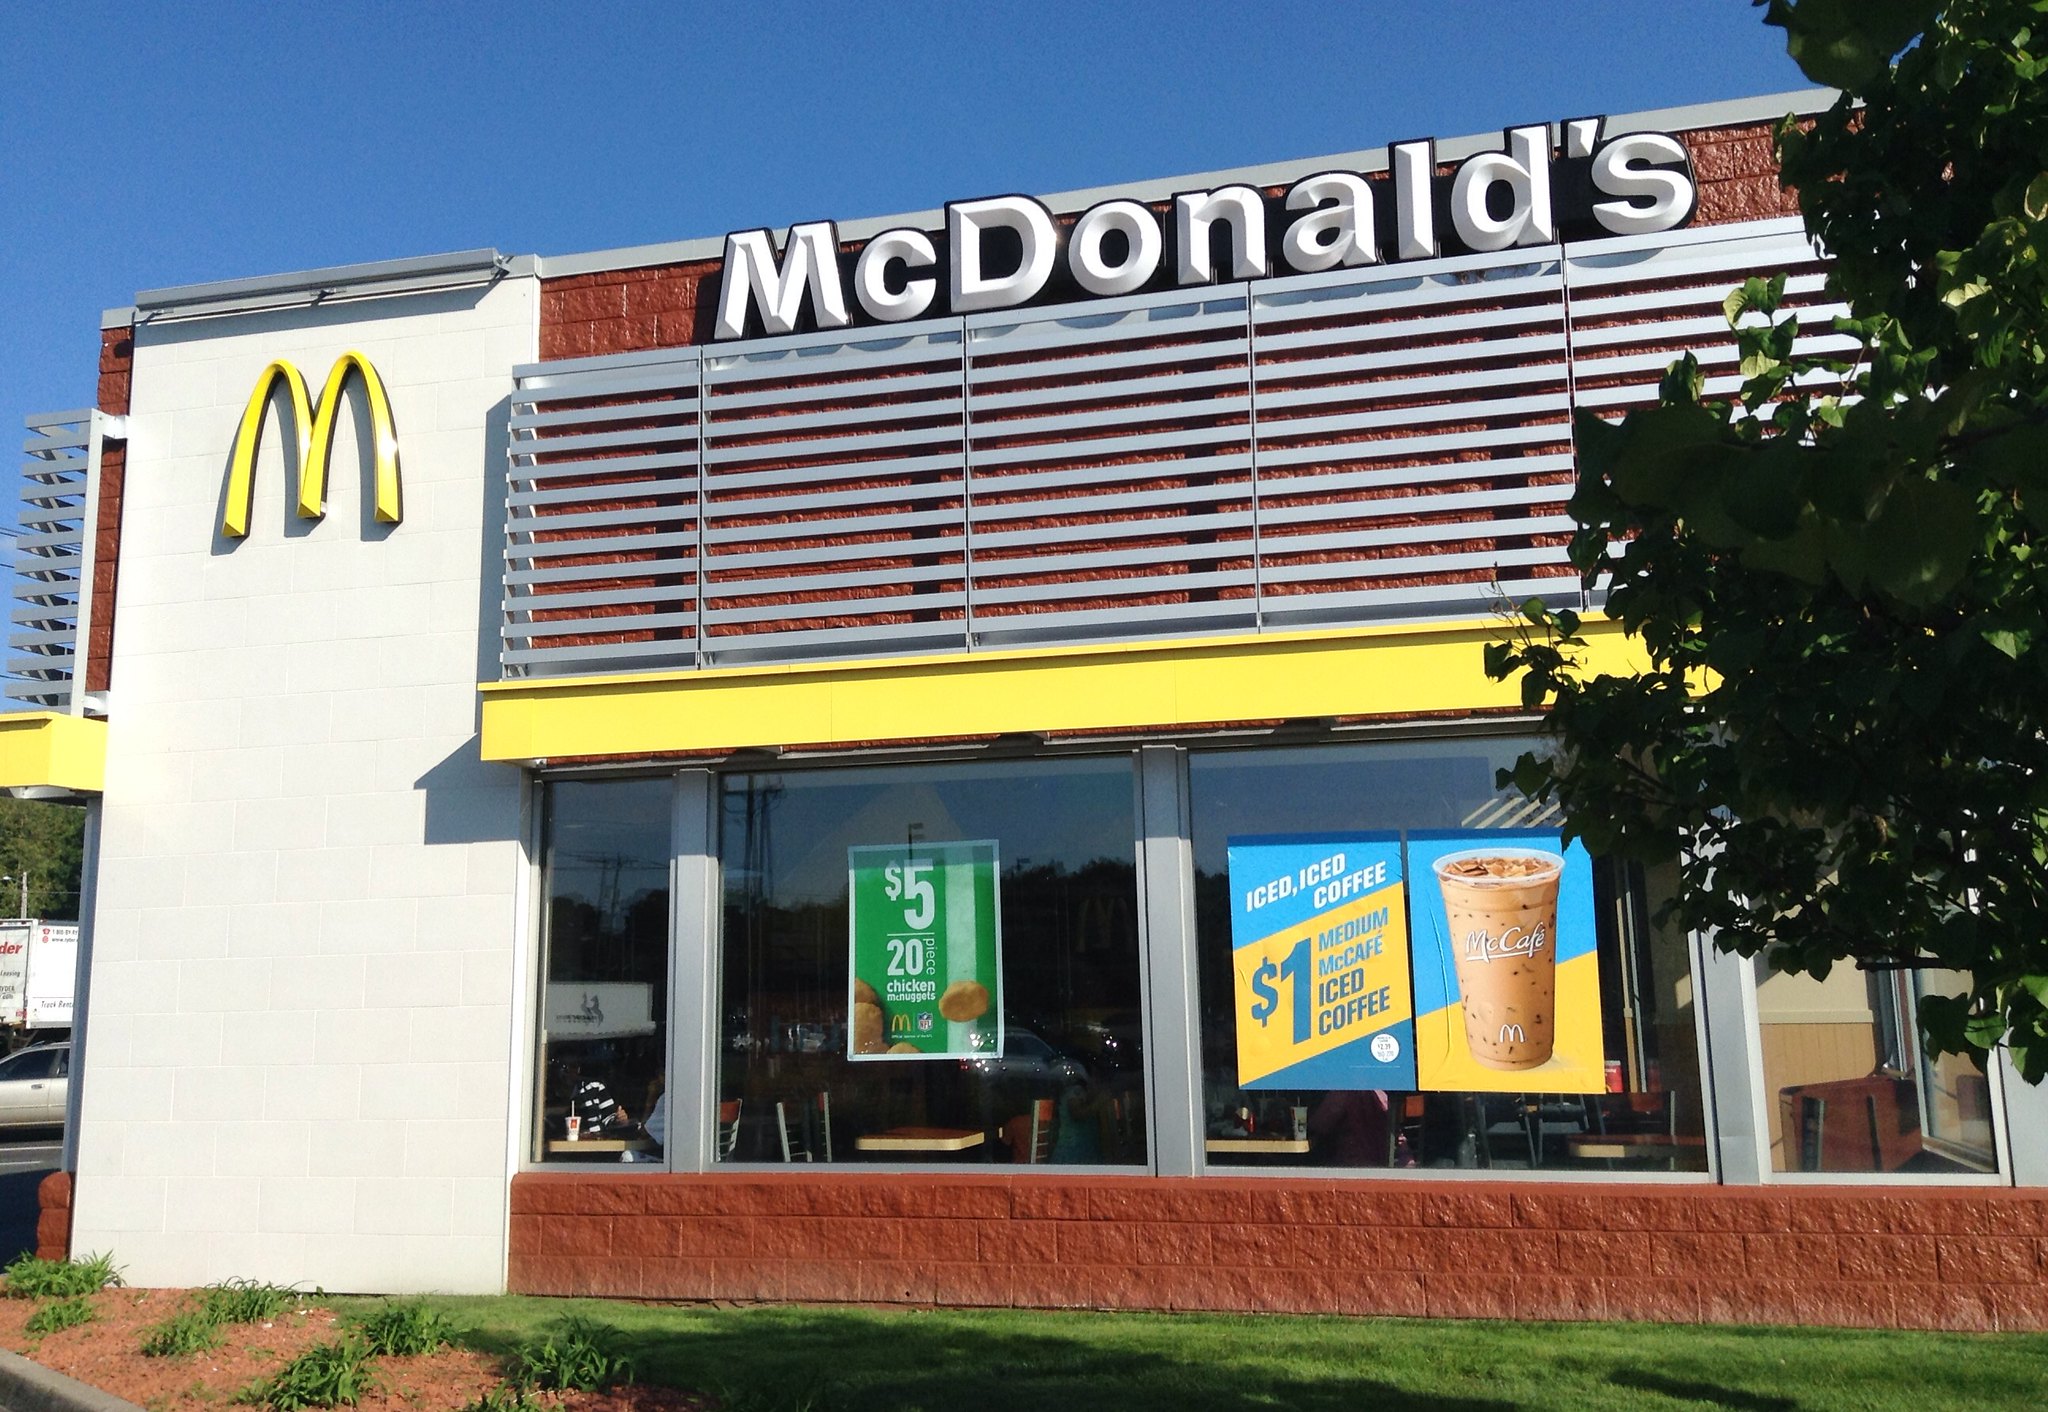 Me macdonald near McDonald’s Coupons